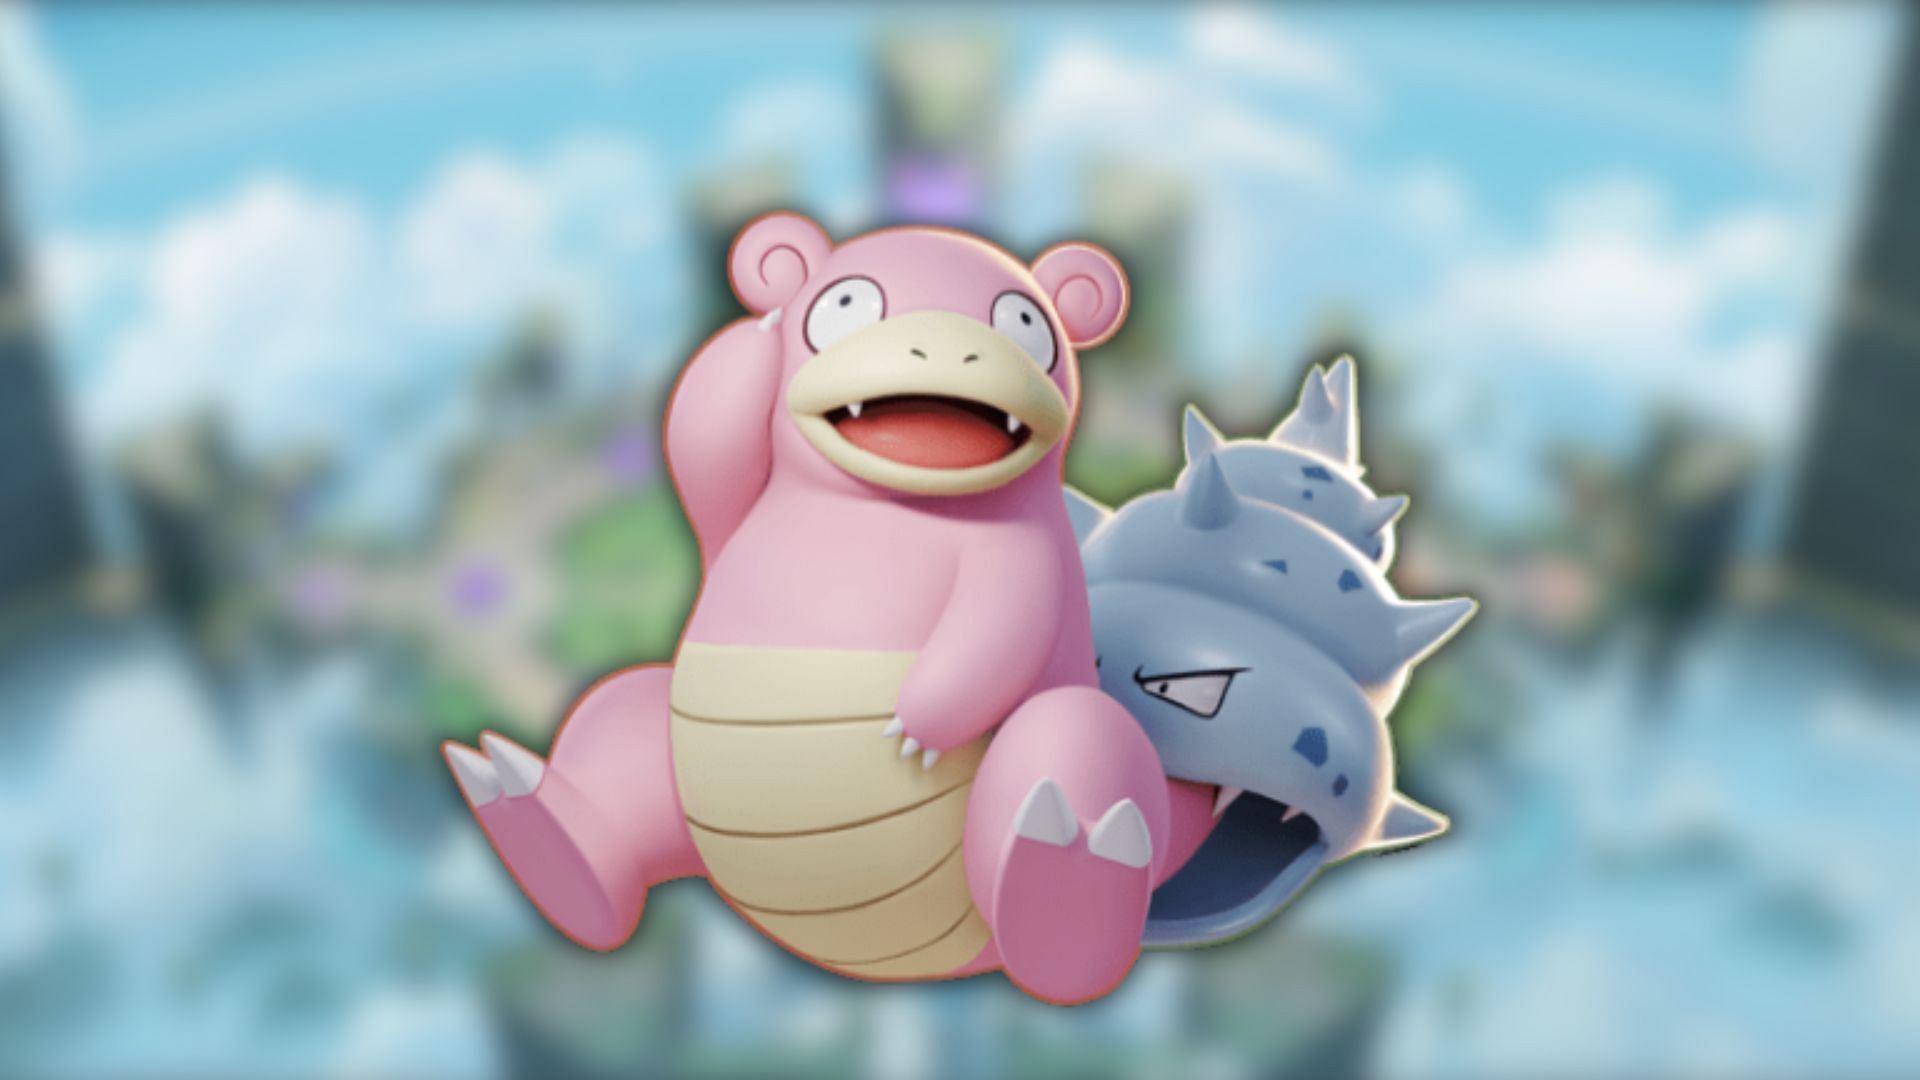 Slowbro receives a buff in Pokemon Unite (Image via The Pokemon Company)